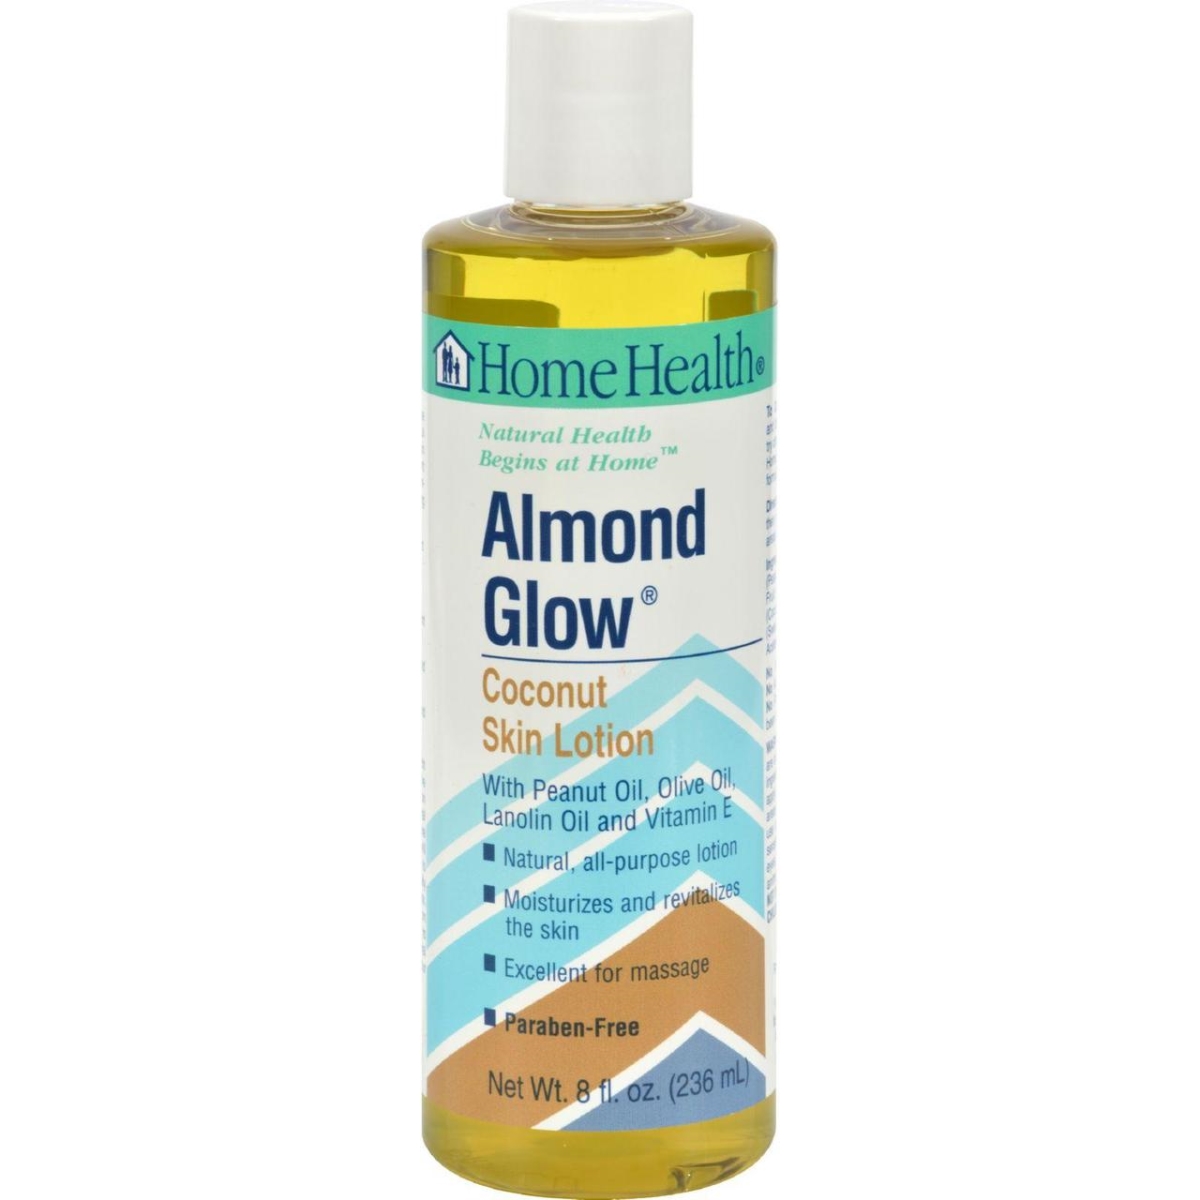 Hg0118364 8 Fl Oz Almond Glow Skin Lotion - Coconut